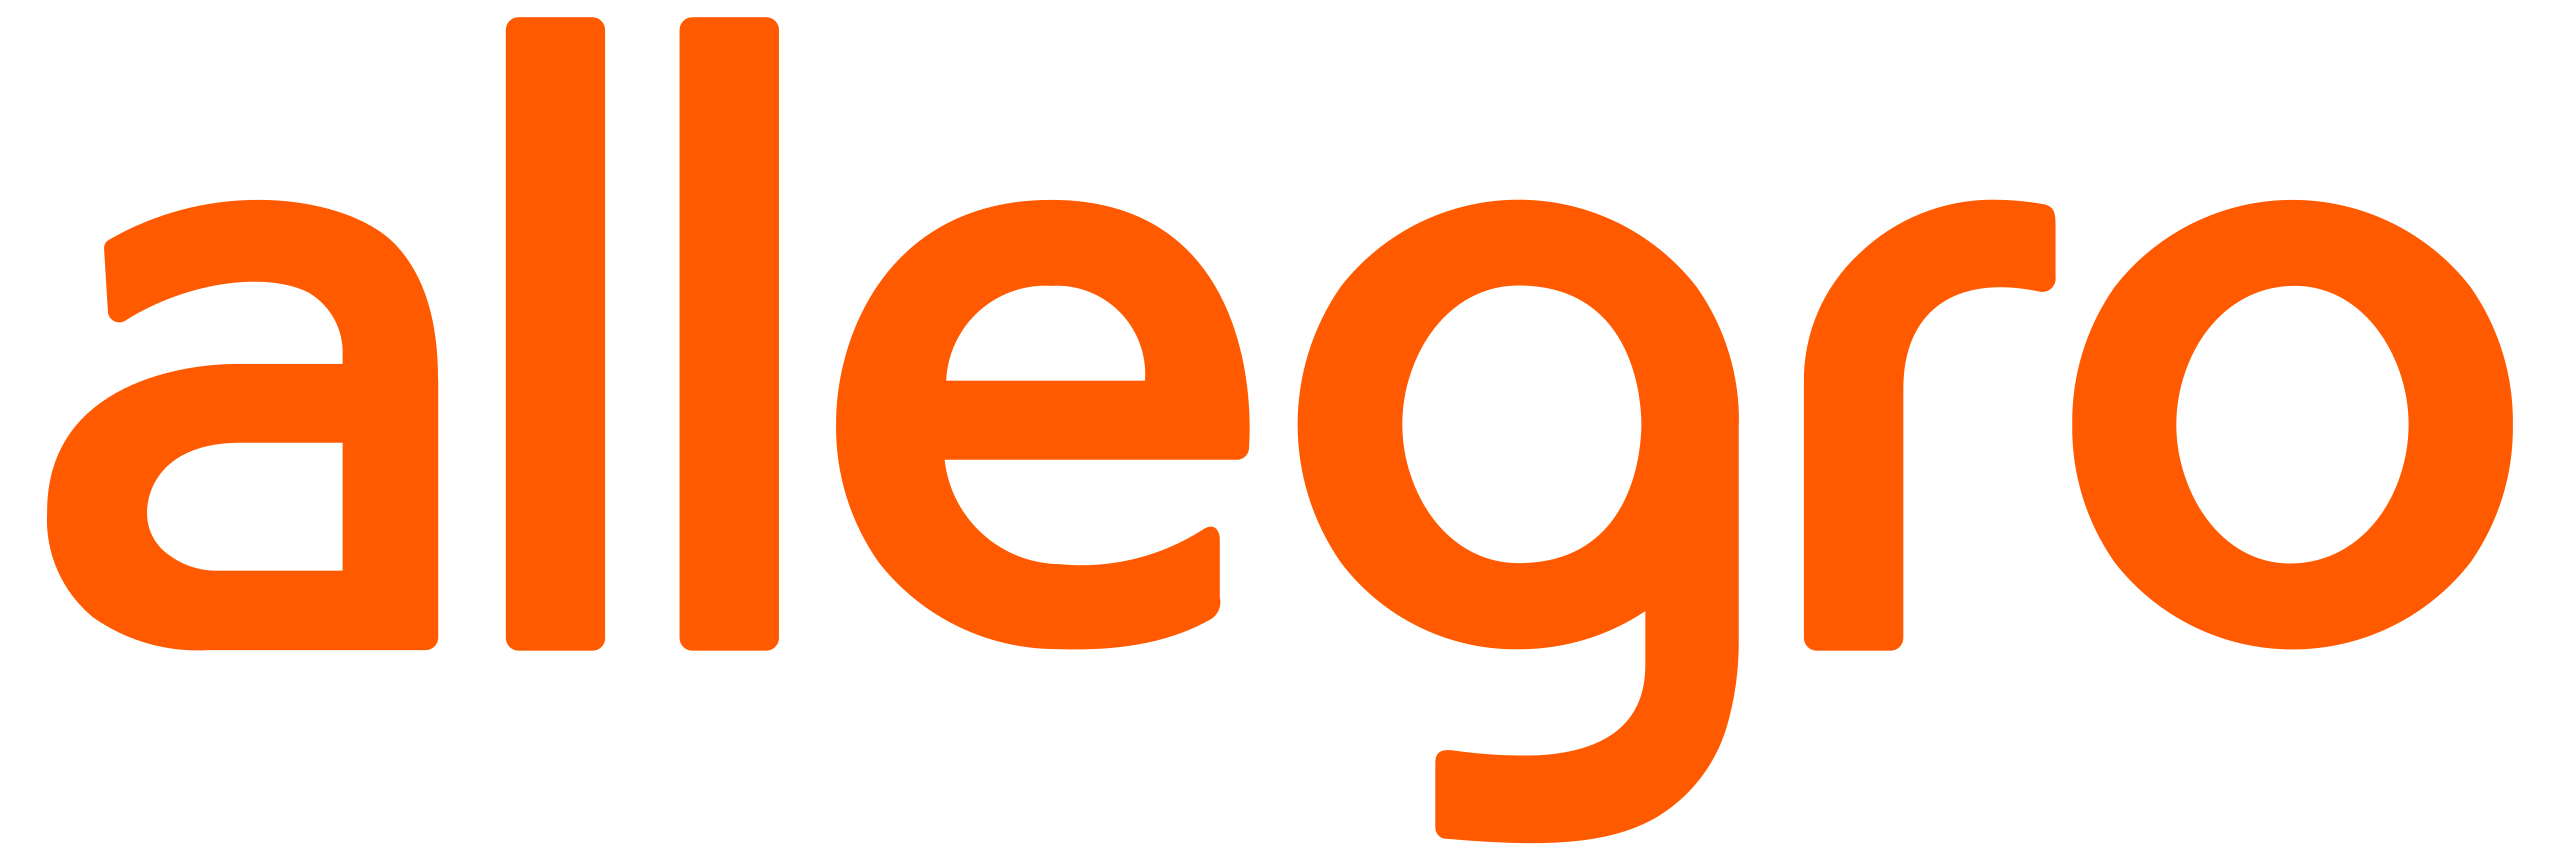 Allegro Brand Logo